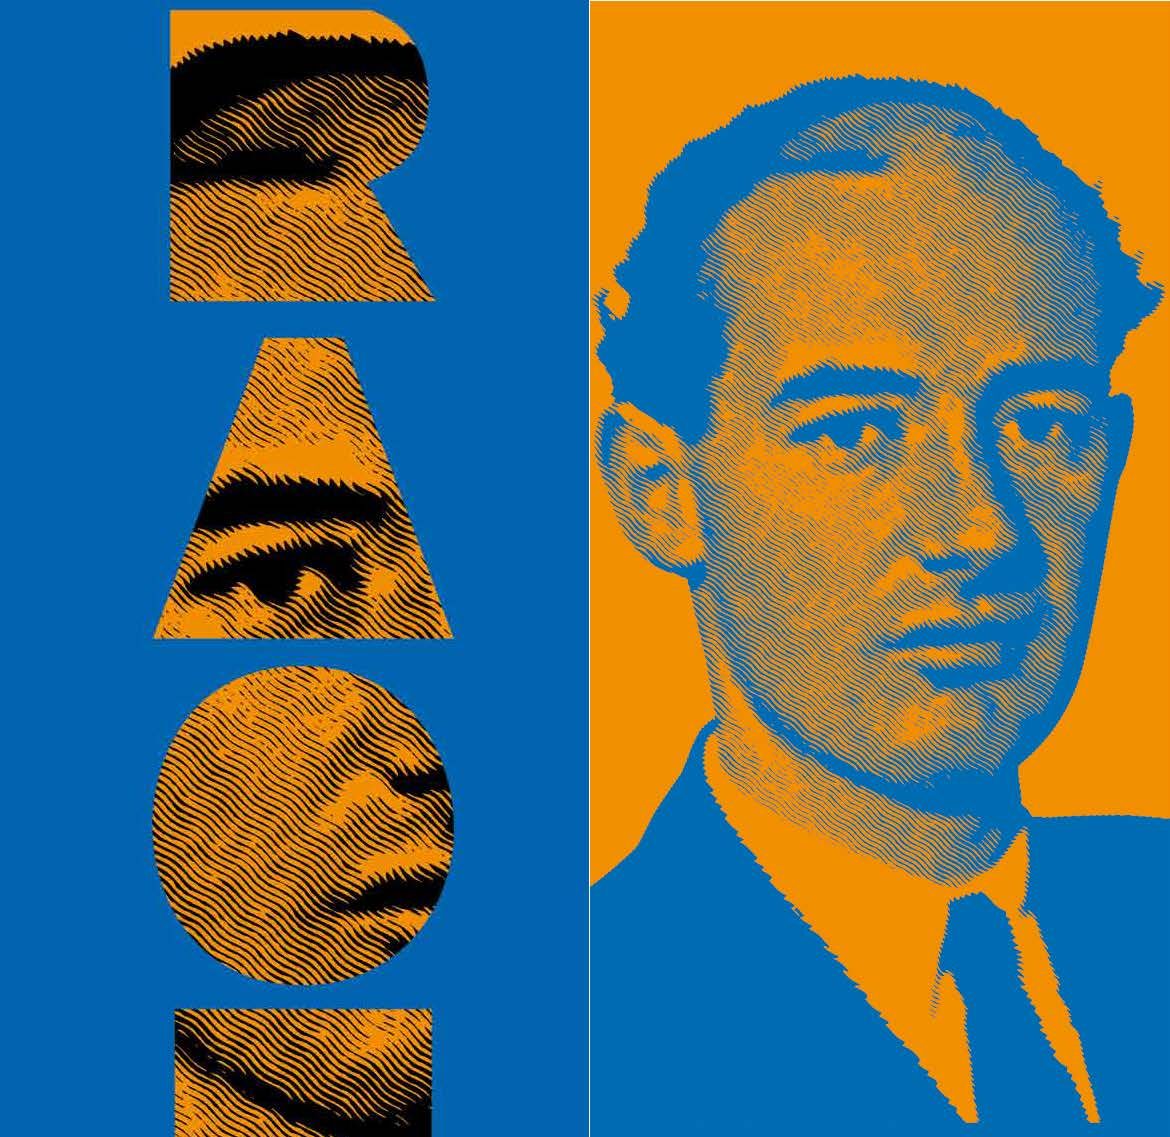 Ett kollage där en medelålders Raoul Wallenberg framträder kolorerat i orange och blått.